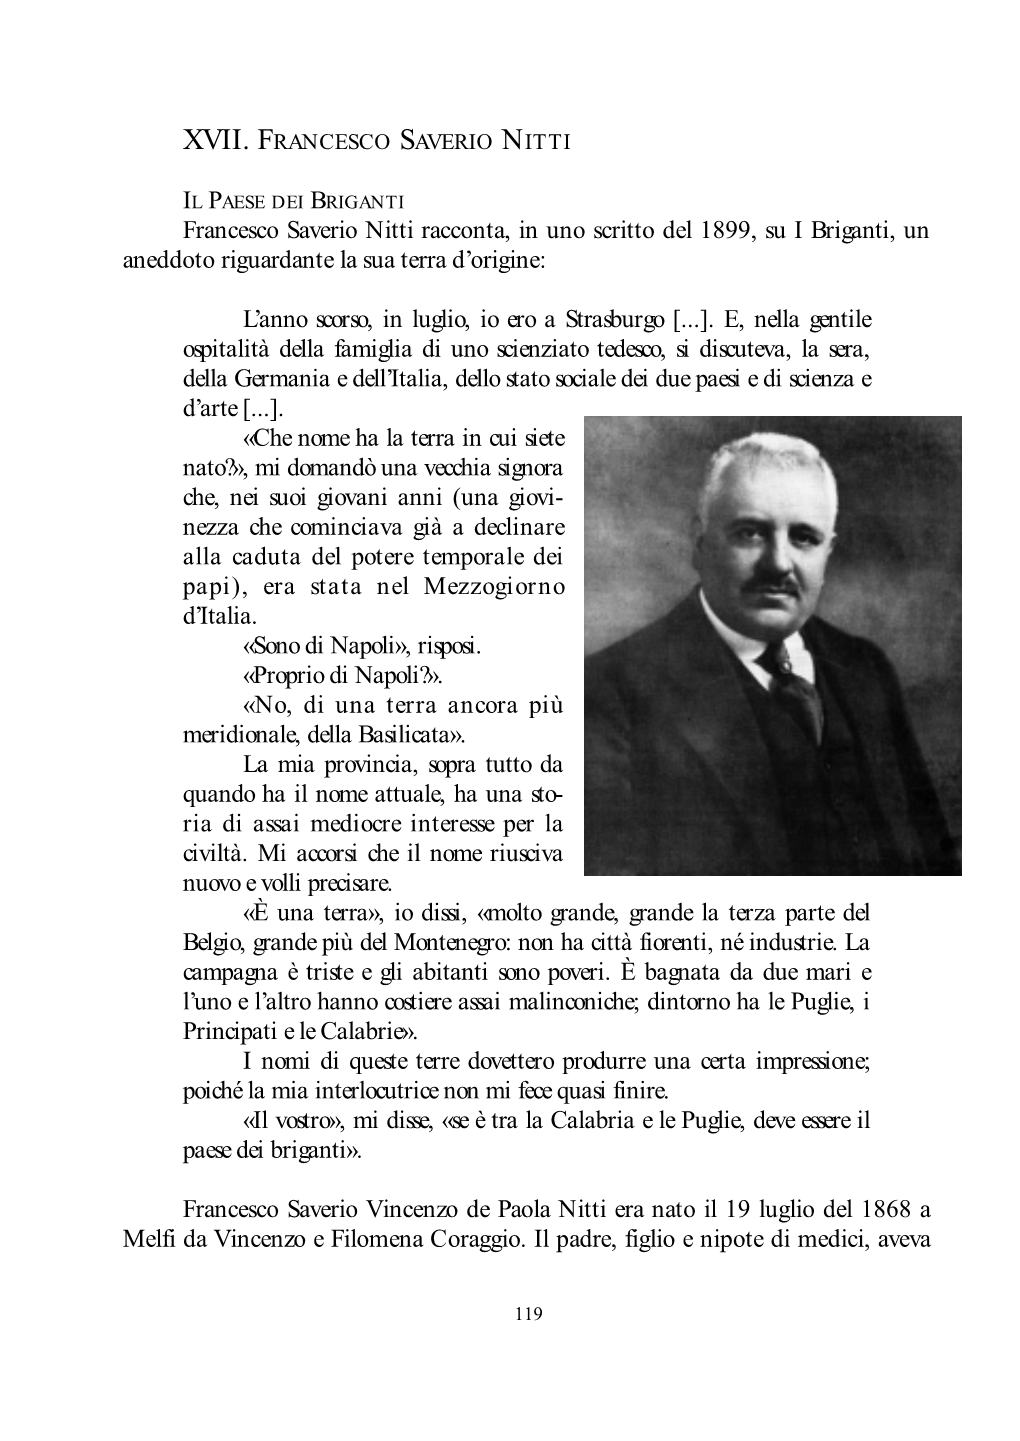 Francesco Saverio Nitti Racconta, in Uno Scritto Del 1899, Su I Briganti, Un Aneddoto Riguardante La Sua Terra D’Origine